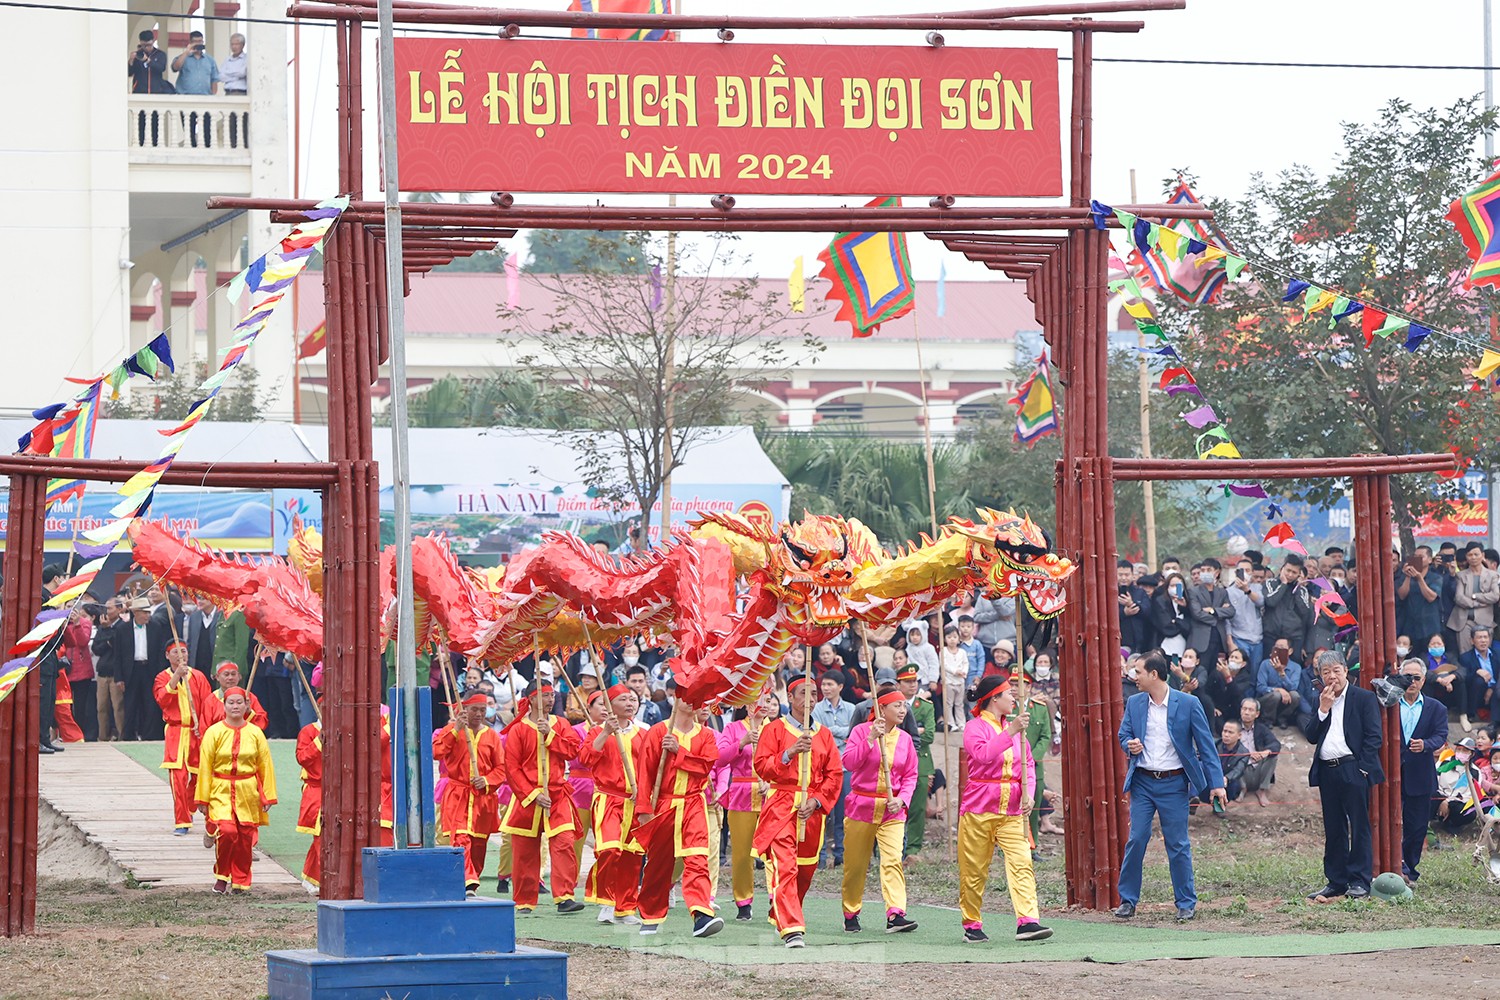 Lễ hội Tịch điền Đọi Sơn cầu mưa thuận gió hòa, mùa màng tươi tốt- Ảnh 1.